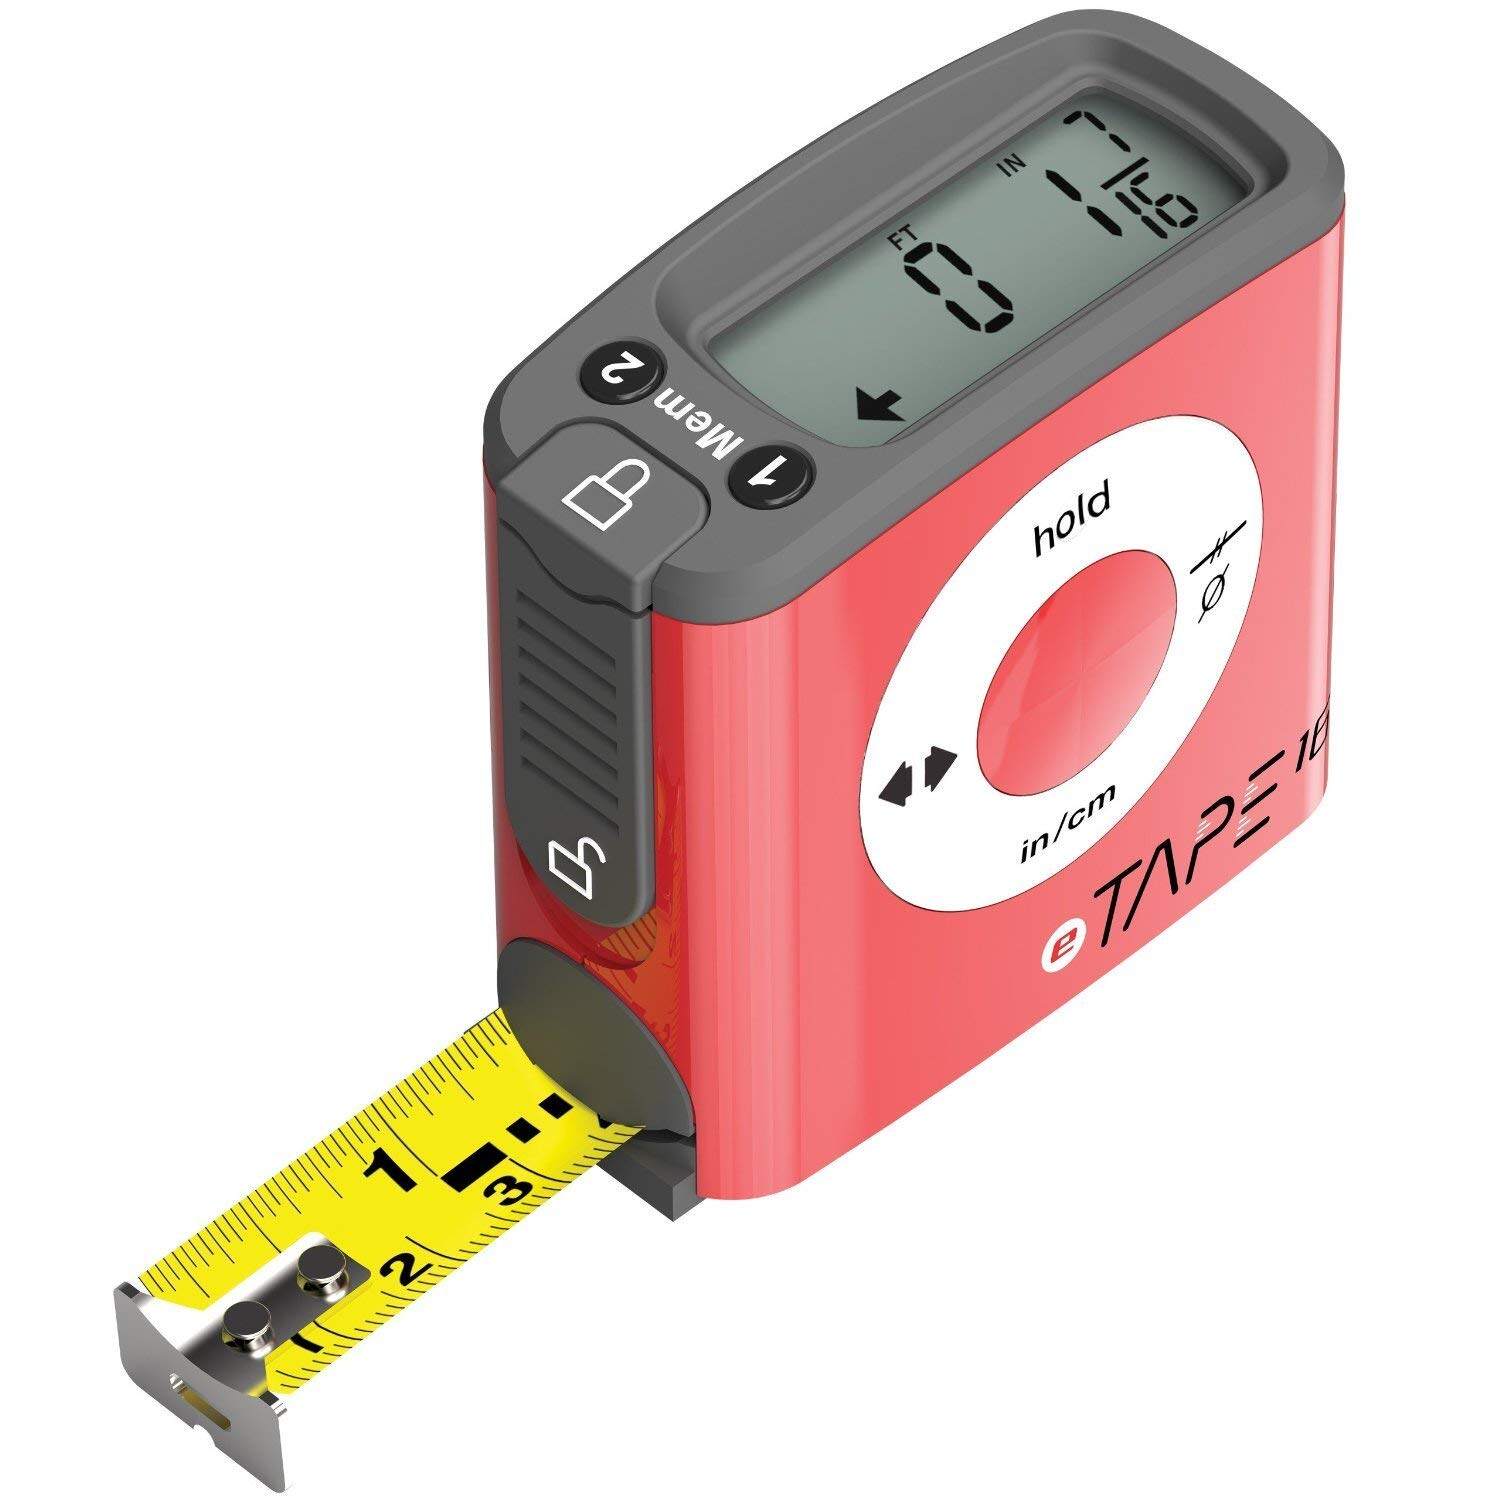 co2crea Hard Travel Case for eTape16 ET16.75-db-RP Digital Tape Measure 